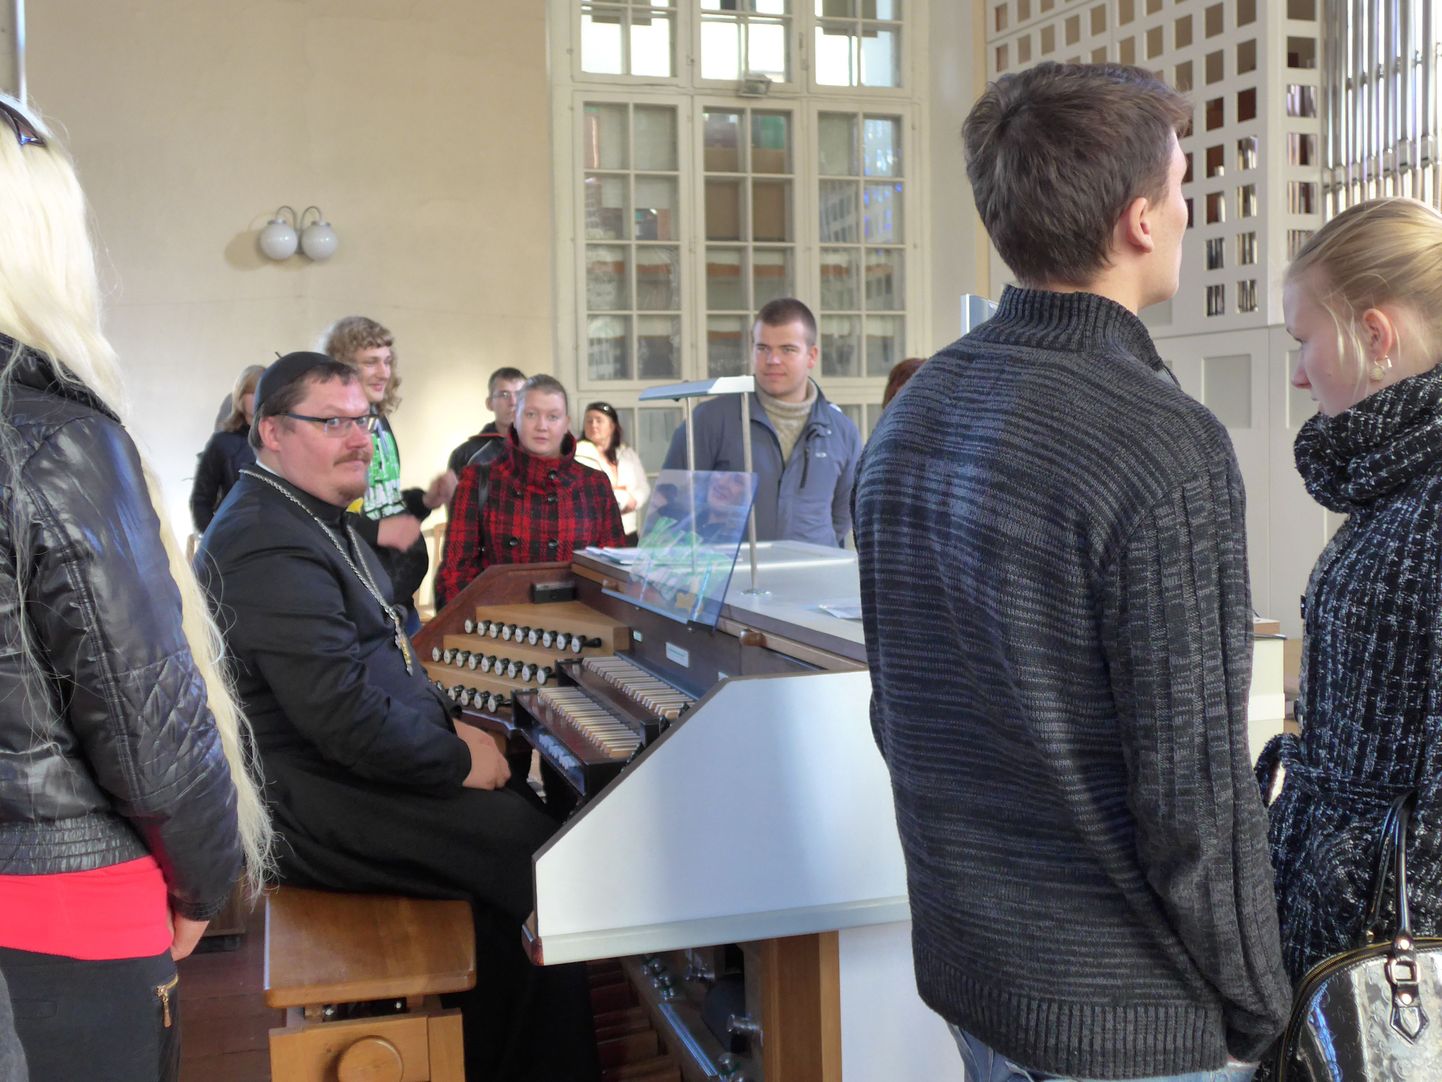 Eliisabeti kiriku organist Jaanus Torrim andis Pärnu täiskasvanute gümnaasiumi õpilastele ajaloo-, ühiskonna- ja muusikaõpetusetunde.